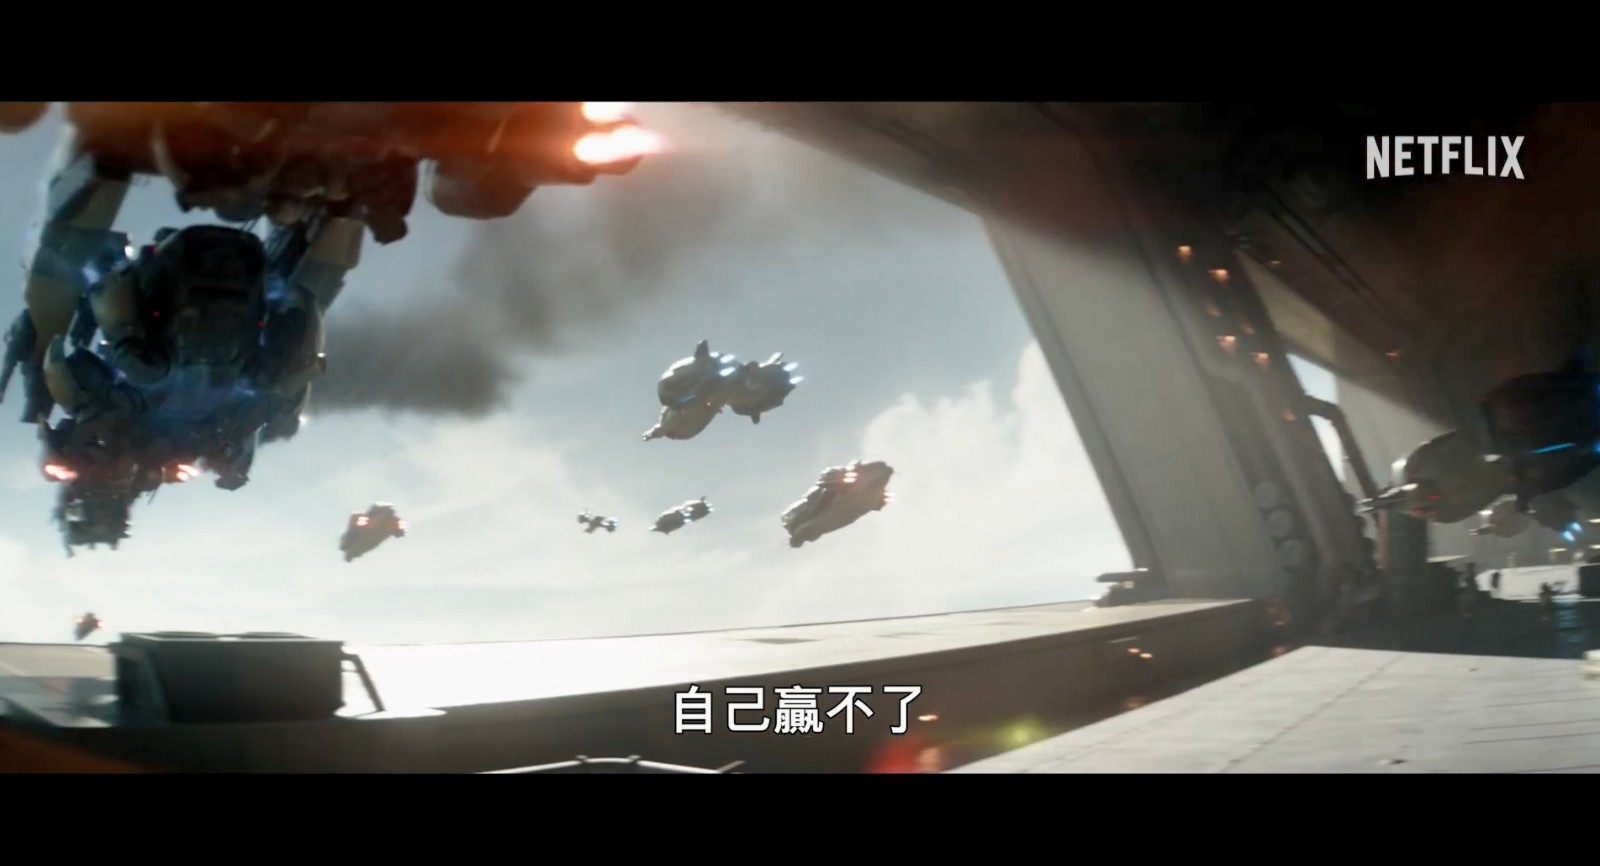 《月球叛军2》发布正式预告 4月19日上线网飞